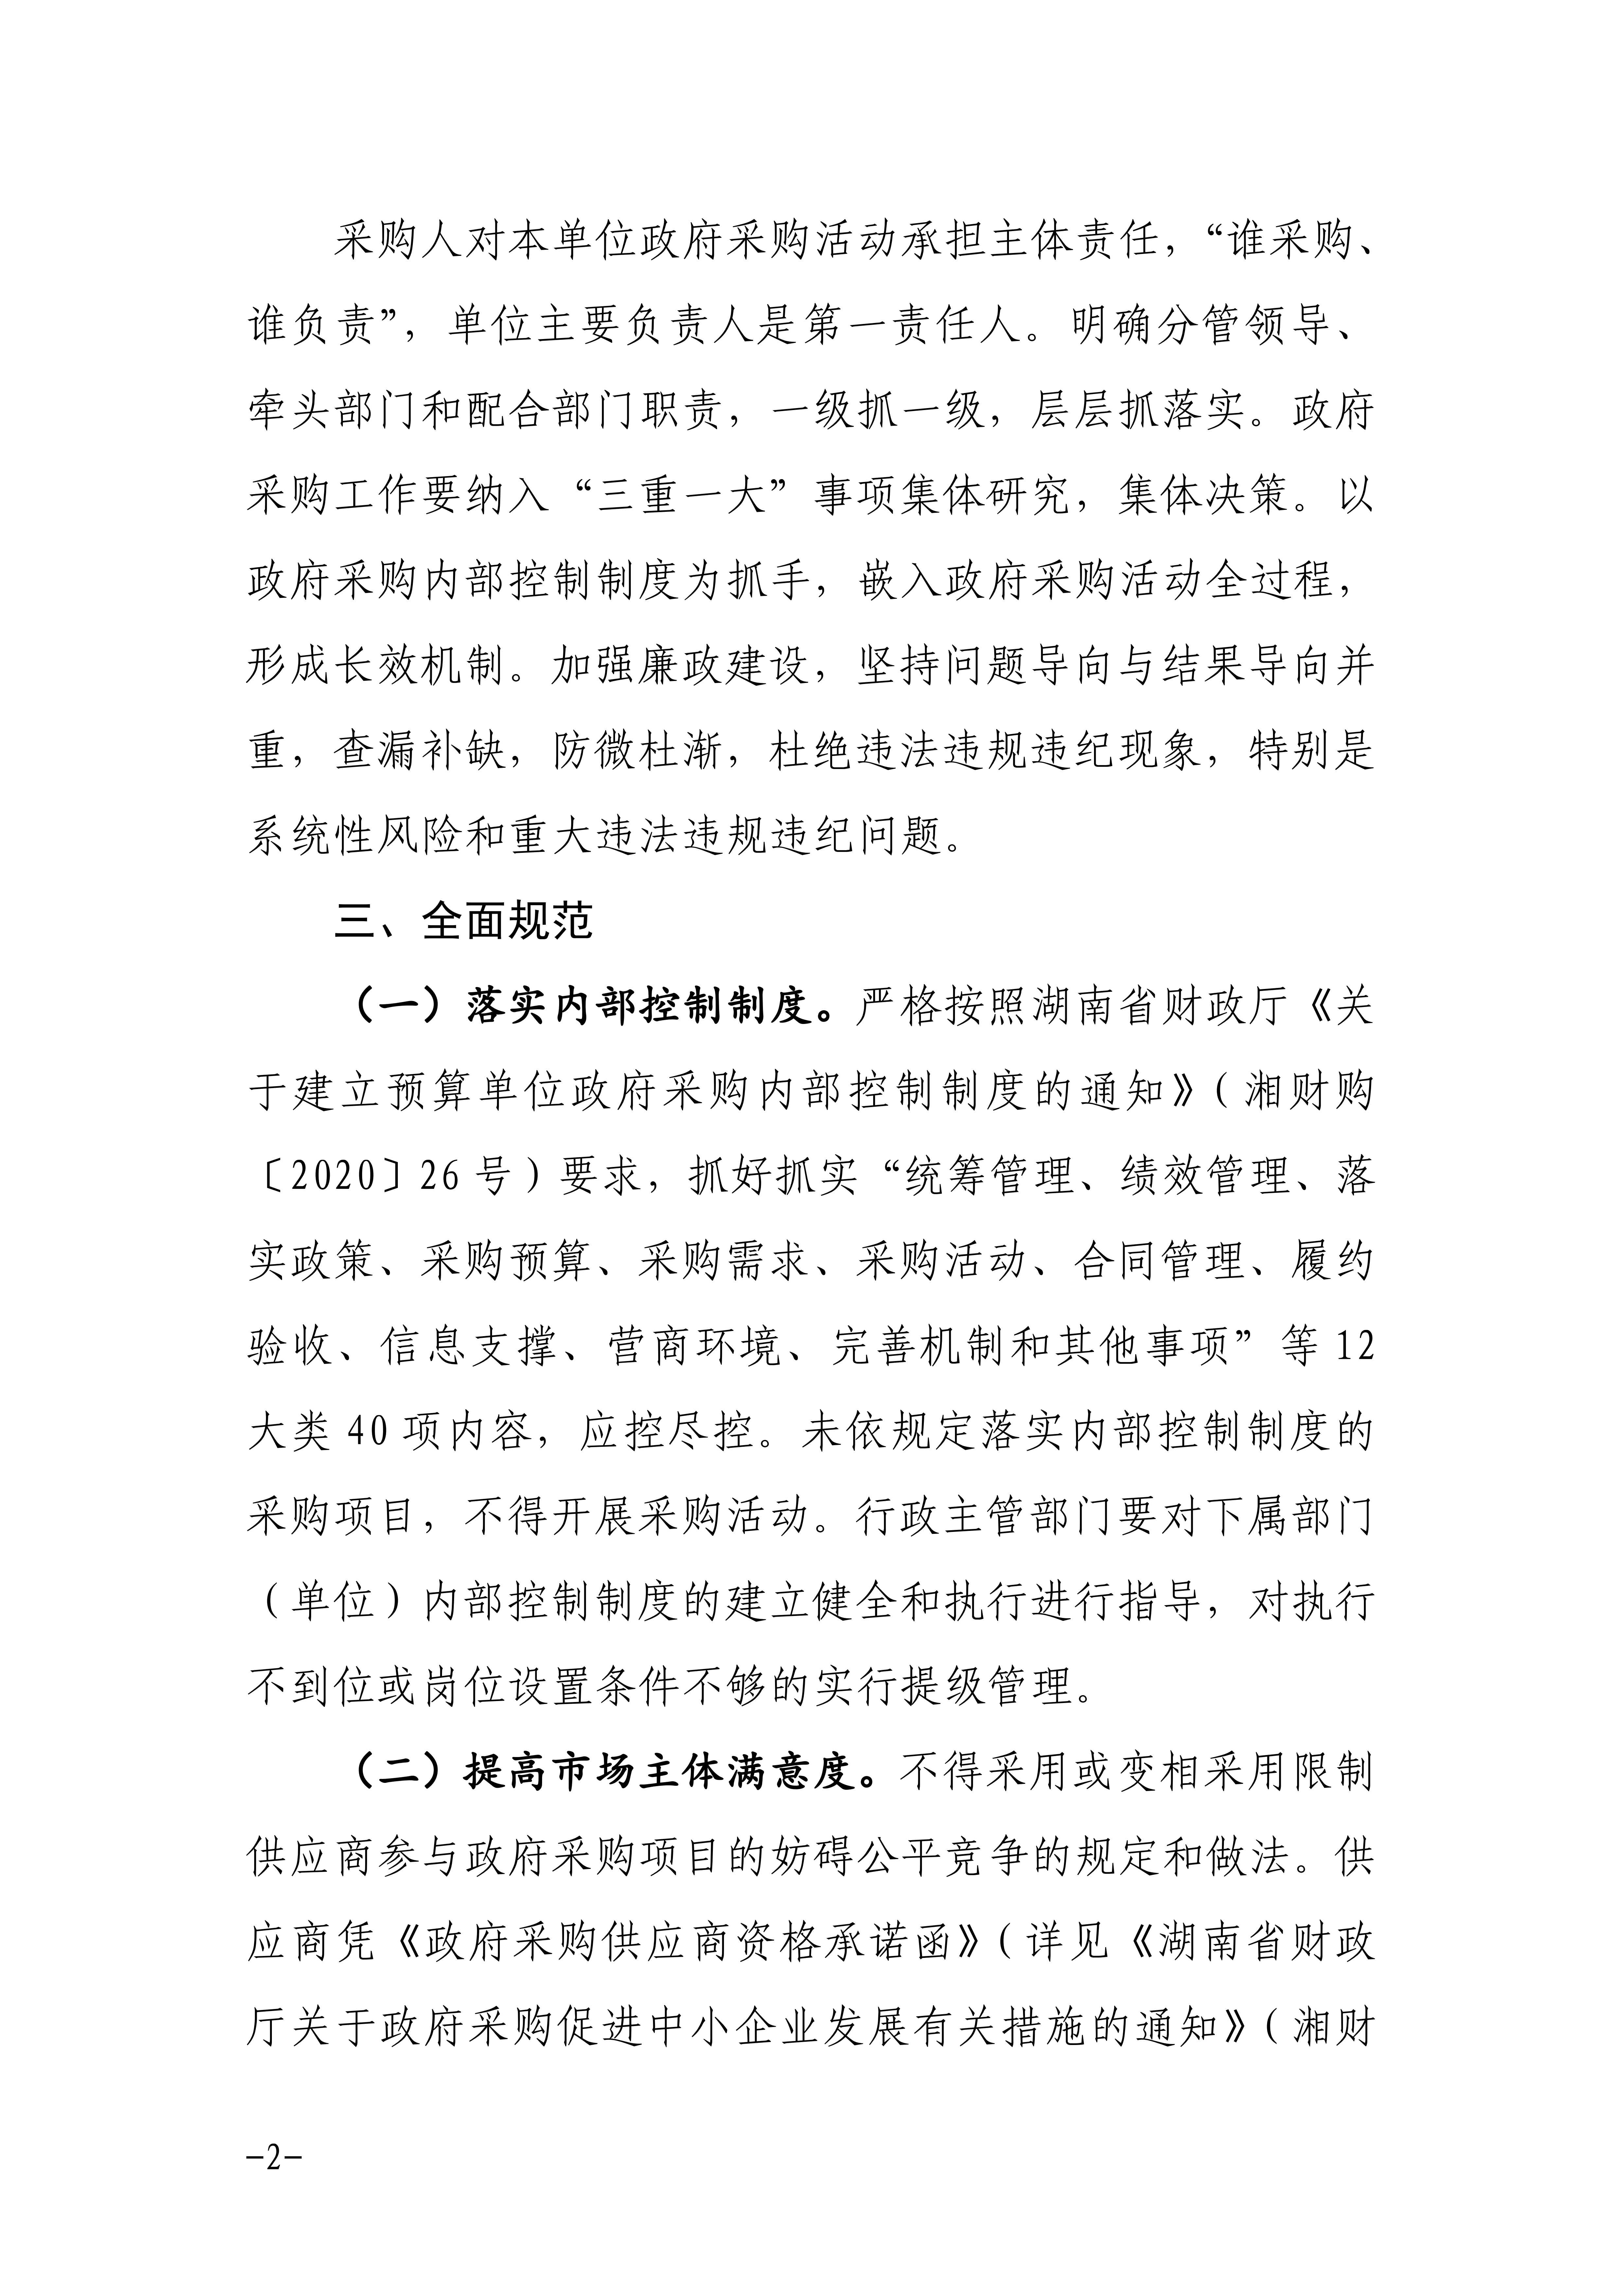 邵阳市关于进一步加强政府采购工作的通知_01.png